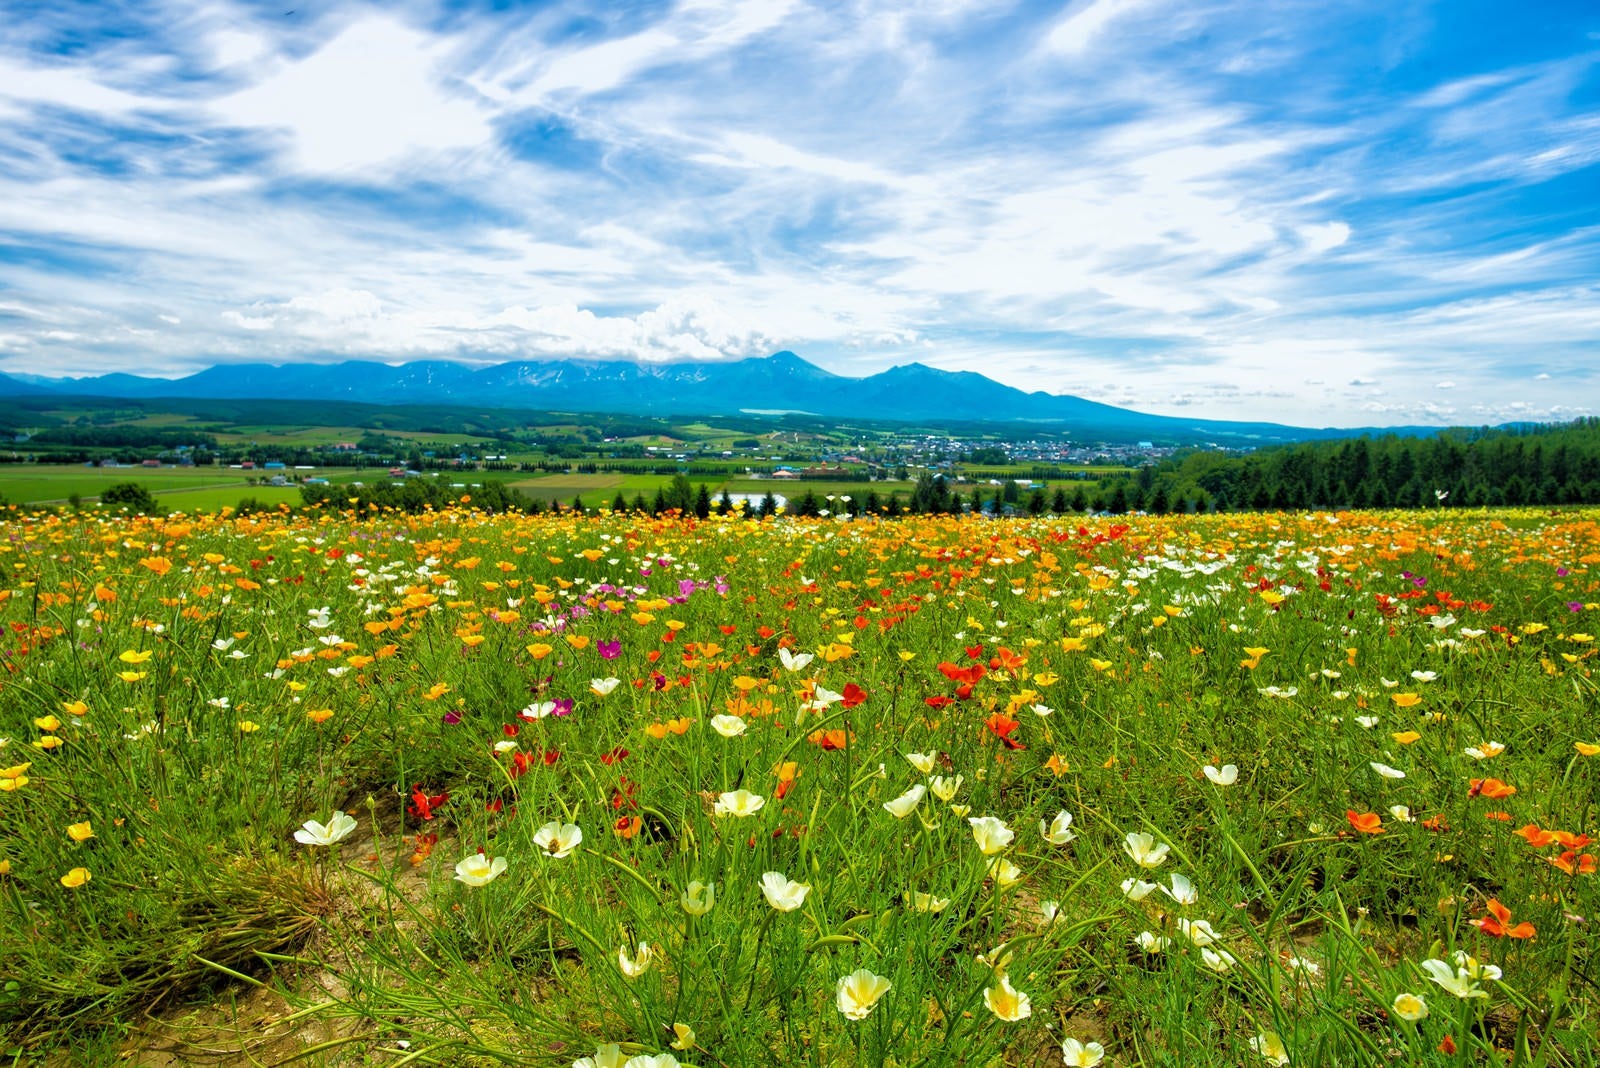 「富良野の高台にある花畑から望む景色」の写真